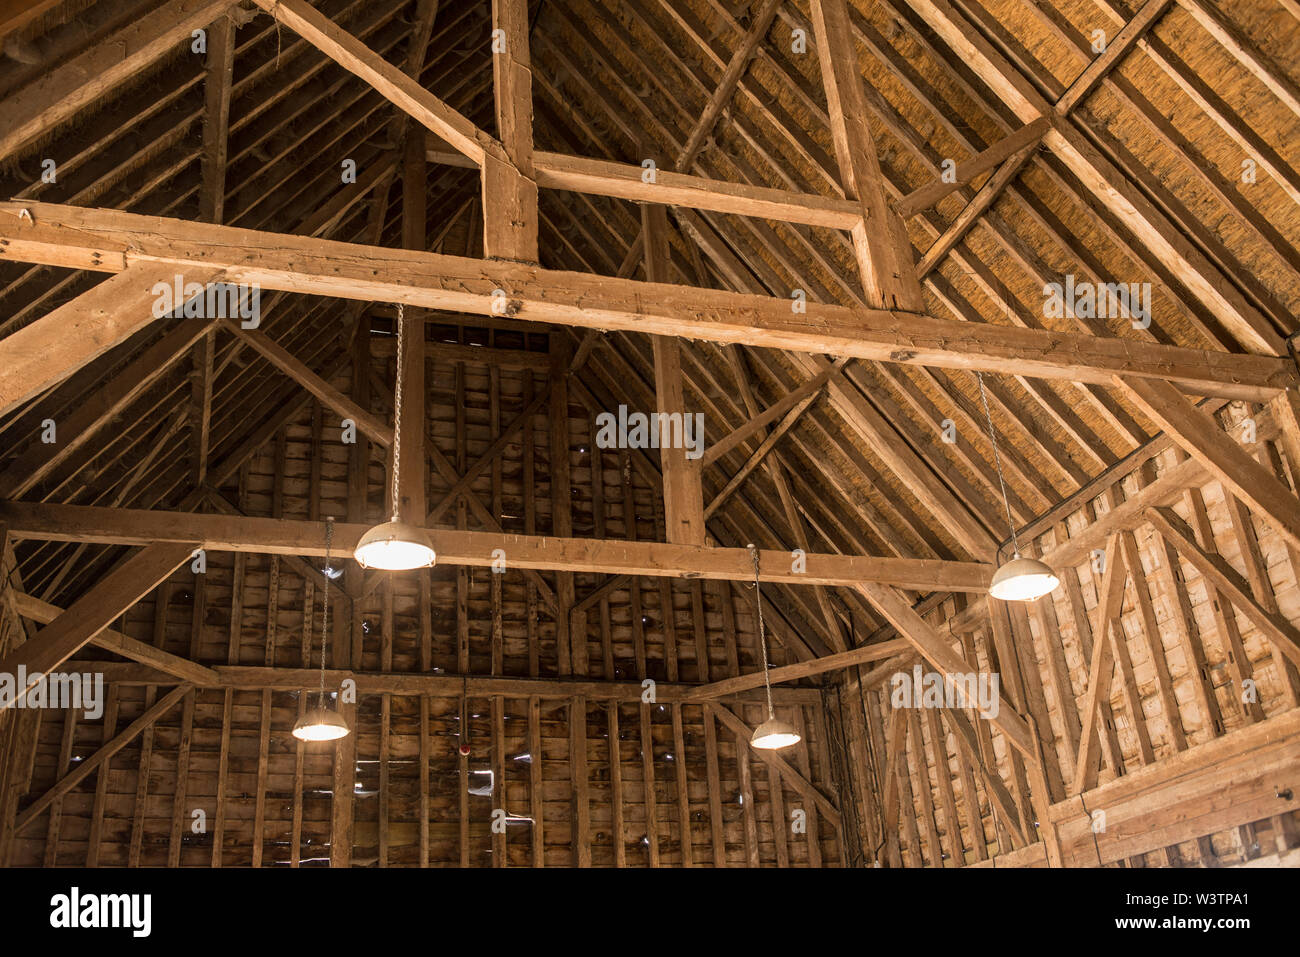 Innenansicht des alten hölzernen Dach Holz Struktur mit Holzbalken in der alten Scheune Stockfoto